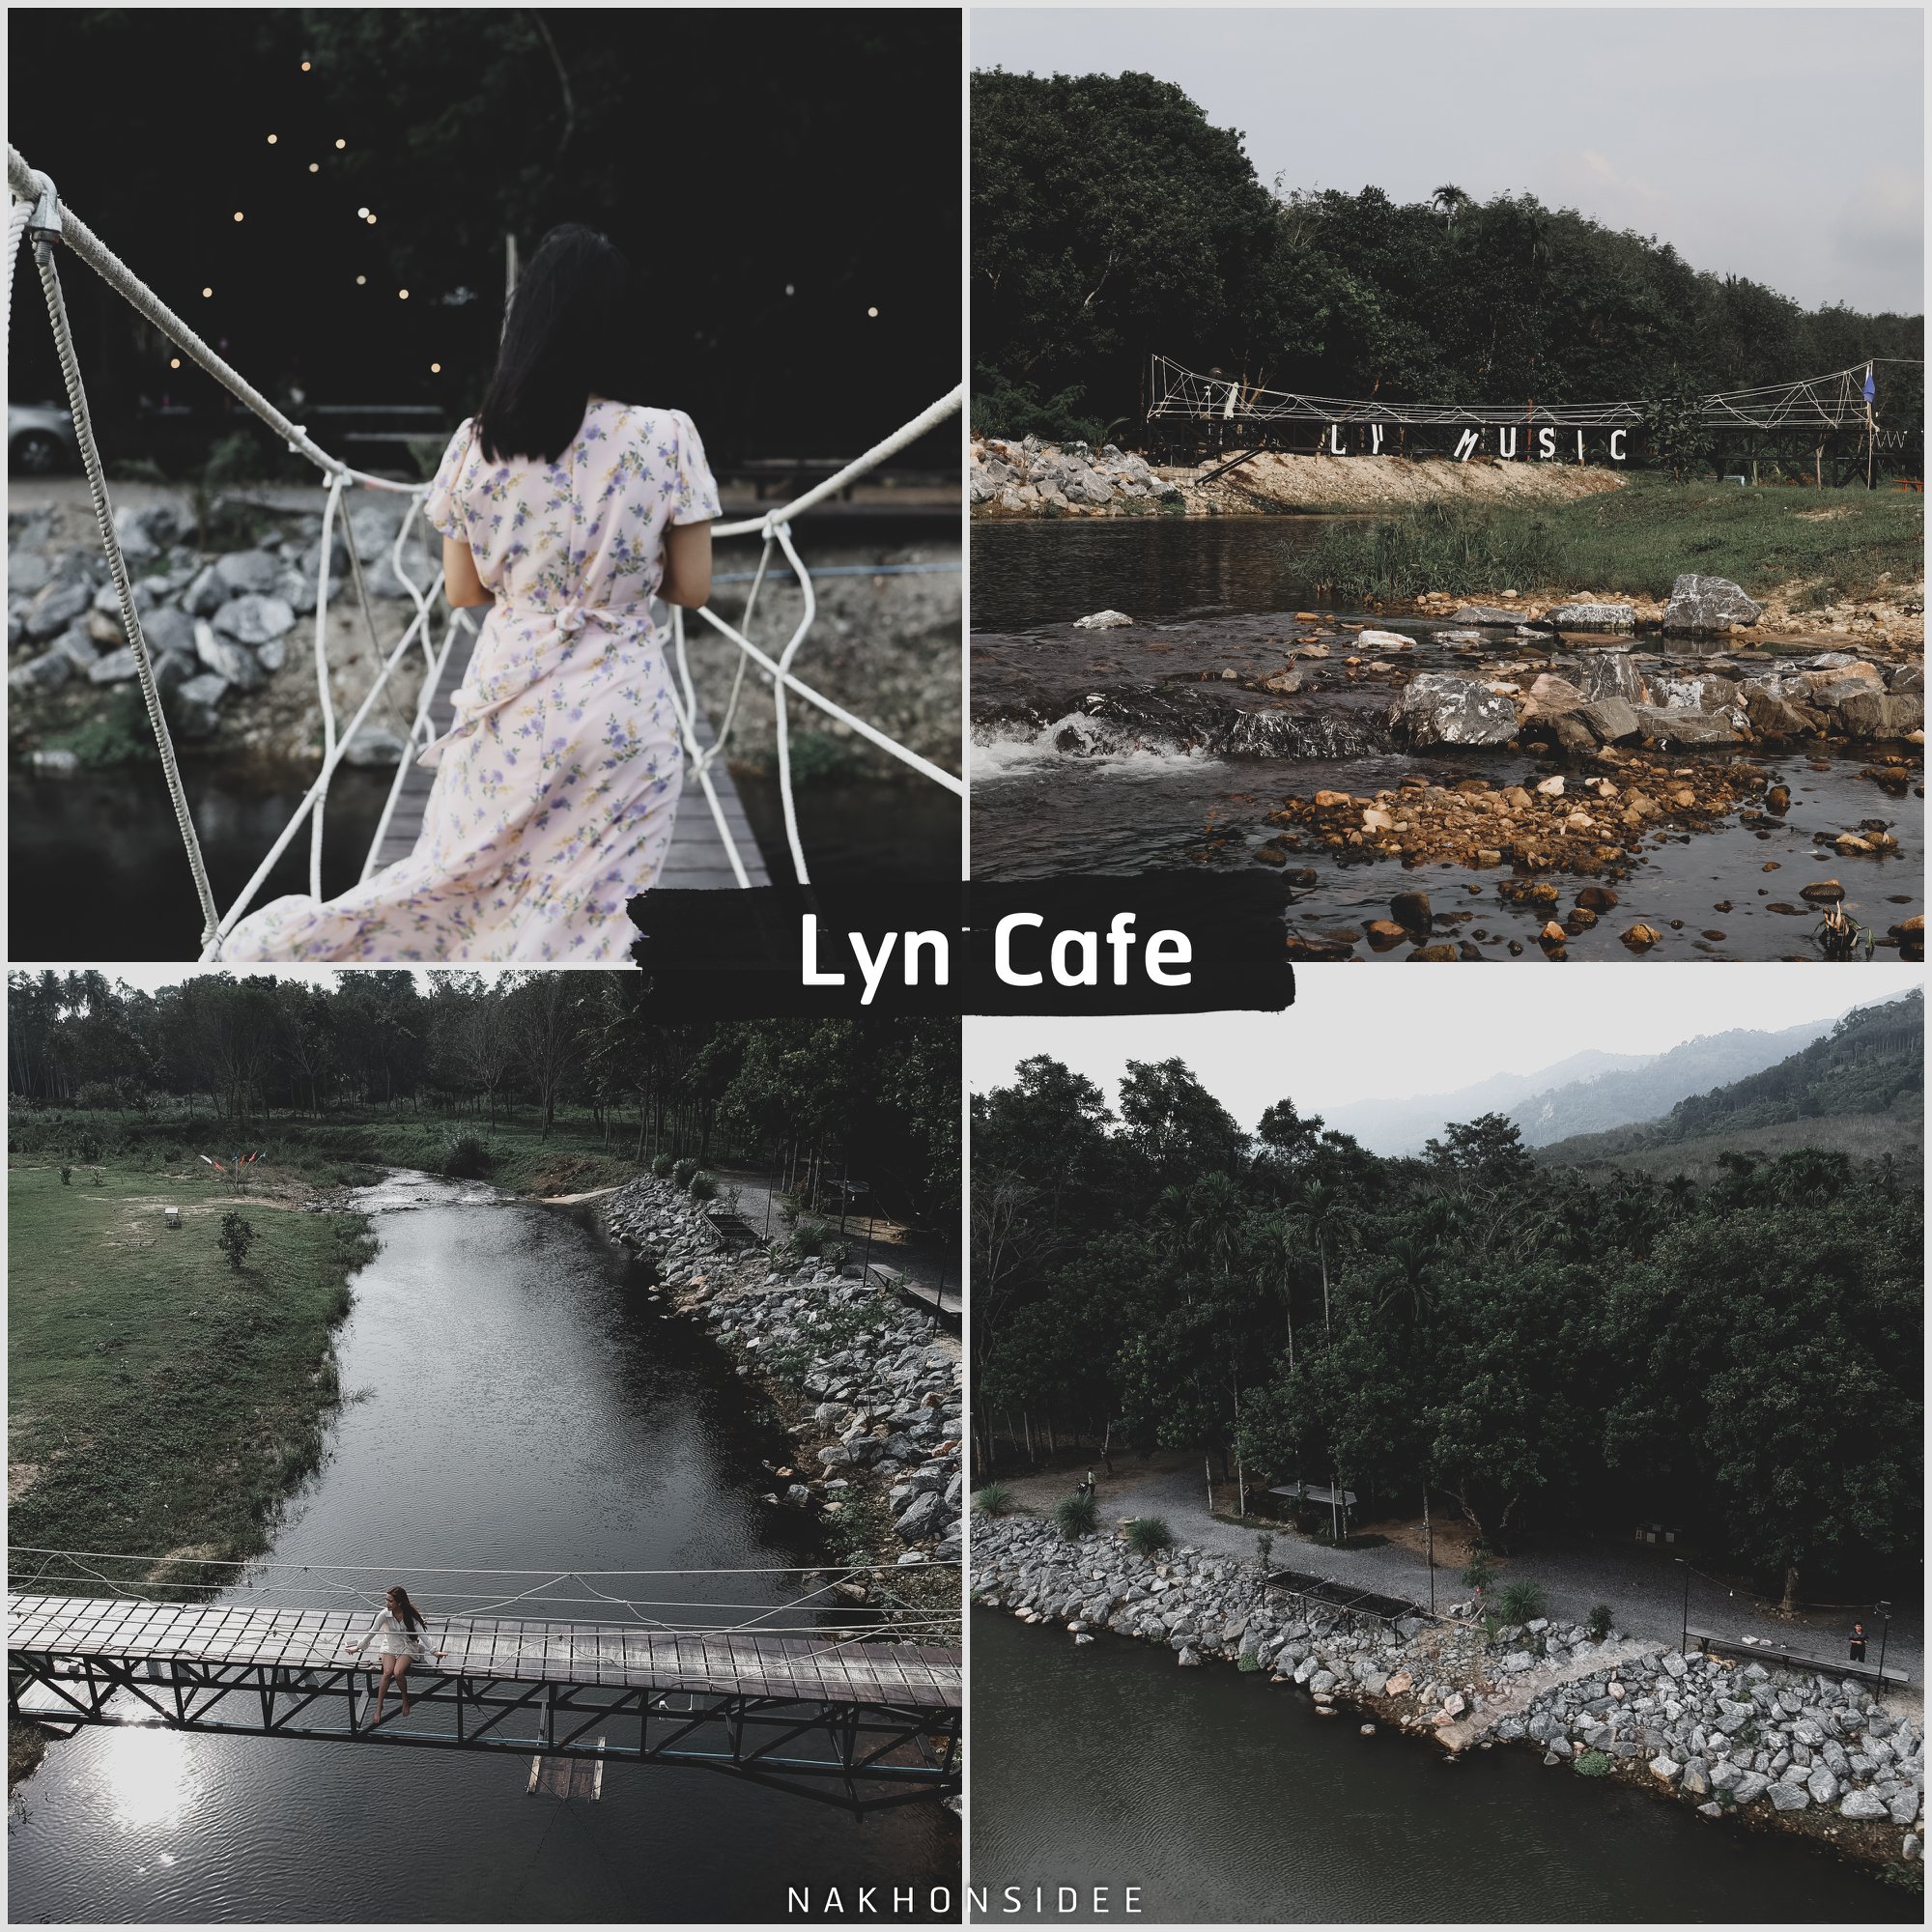  Lyn-Cafe

คลิกที่นี่ คาเฟ่สวย,วิวหลักล้าน,นครศรีธรรมราช,รวมcafe,คาเฟ่,ร้านอาหาร,ร้านกาแฟ,ภูเขา